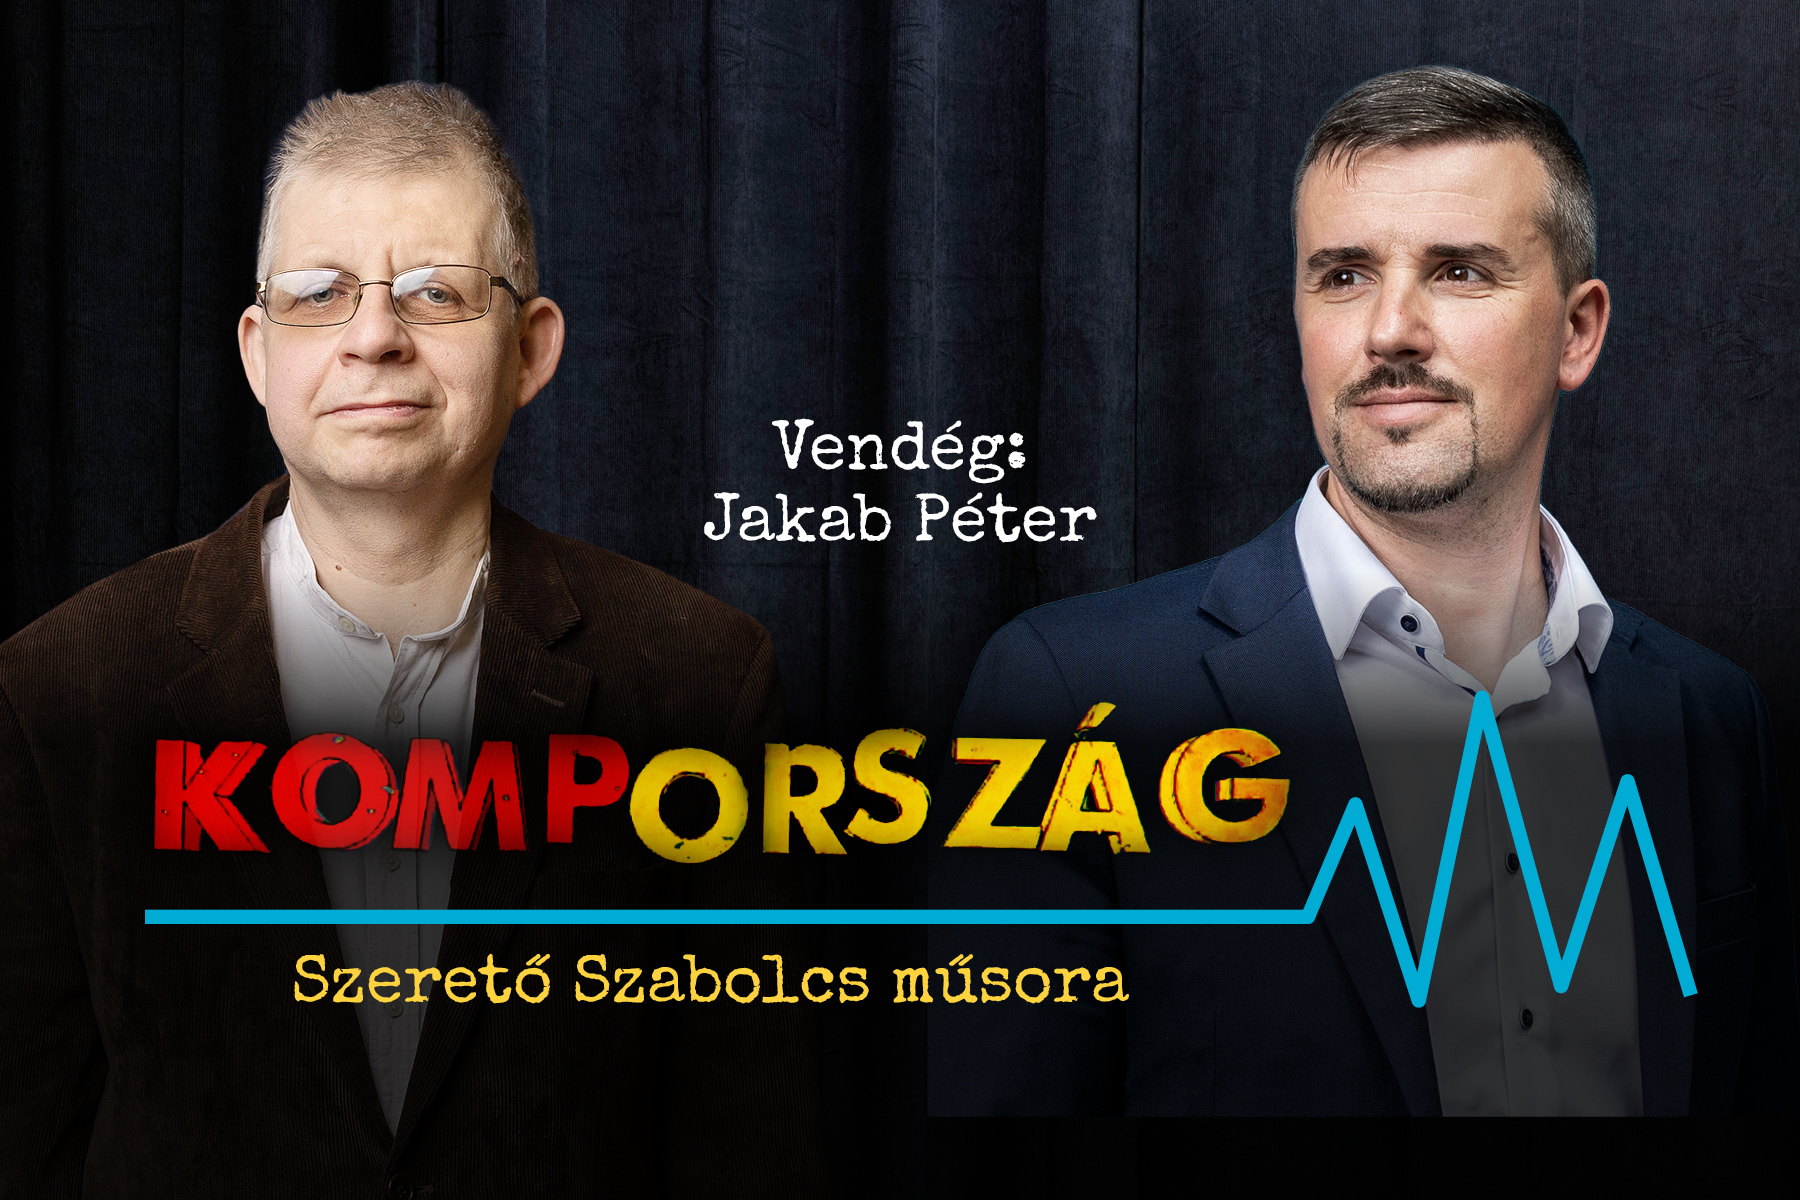 Jakab Péter: Származásom miatt nem engedett indulni a Jobbik – Kompország